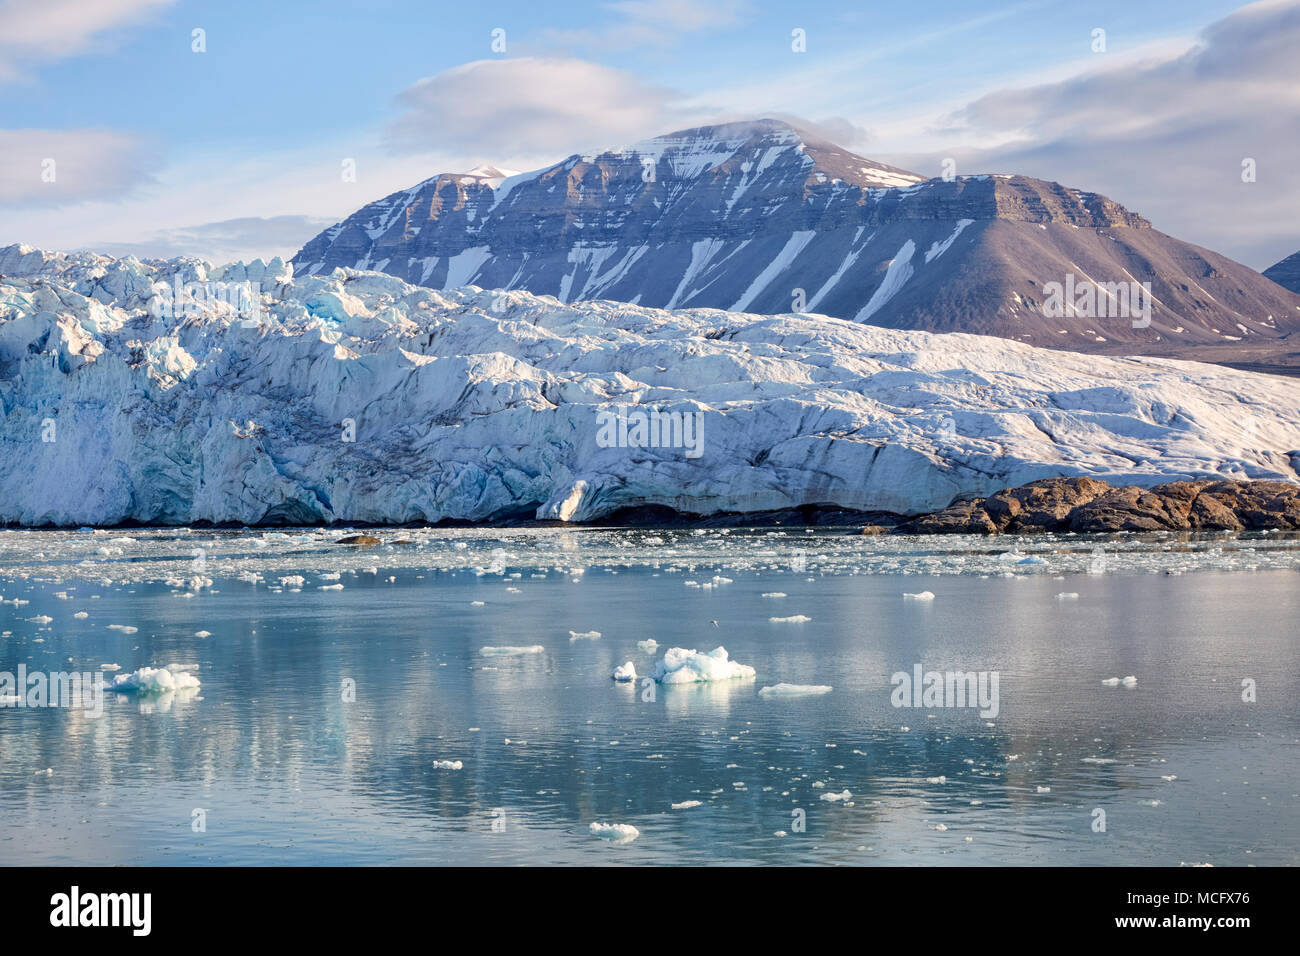 Dans Nordenskioldbreen Billefjorden glacier fjord au Svalbard (Spitzberg, Norvège) Banque D'Images